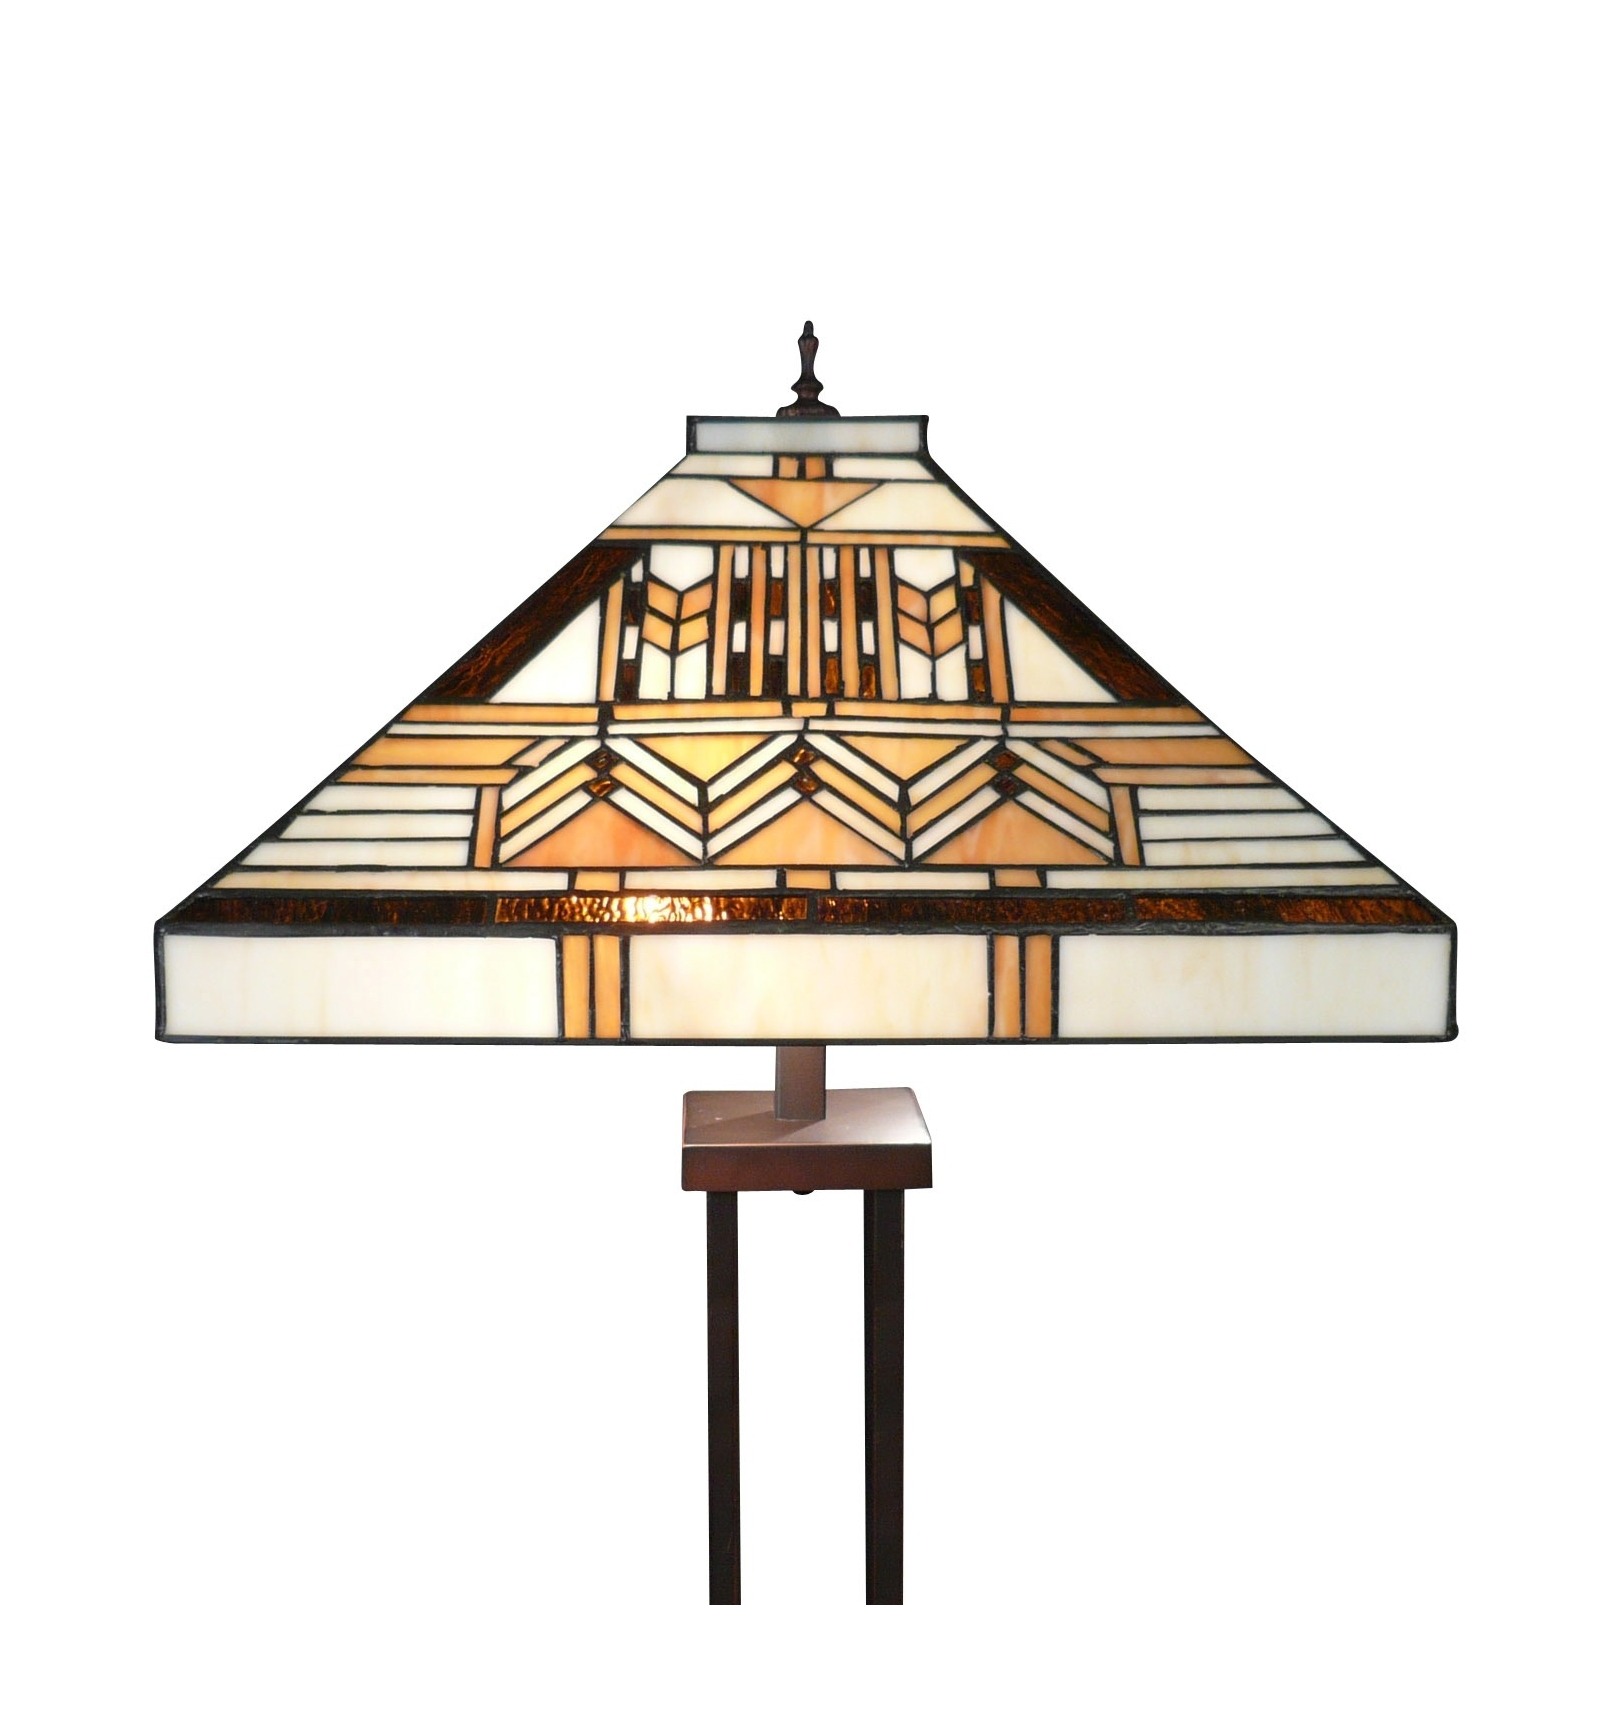 Volgen Leeuw Alfabet Art Deco Tiffany Floor Lamp from the Boston Series - Art Deco Lamps